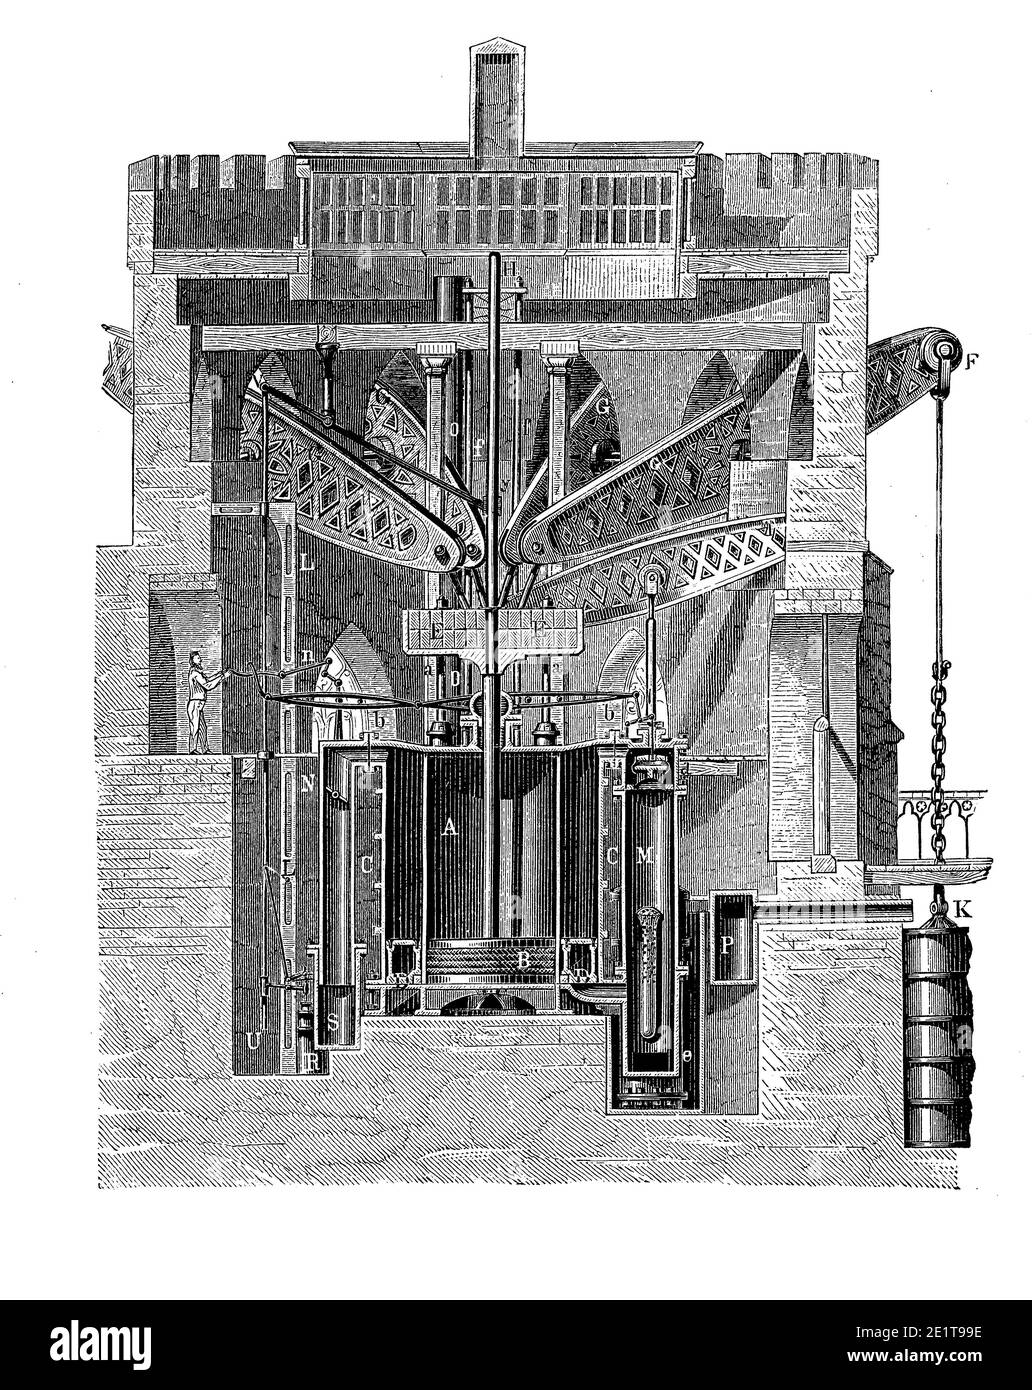 Riesige Dampfpumpe Motor Installation Abschnitt, im Jahr 1852 abgeschlossen, nach Jan Leeghwater niederländischen Hydrauliktechniker des 17. Jahrhunderts benannt Stockfoto